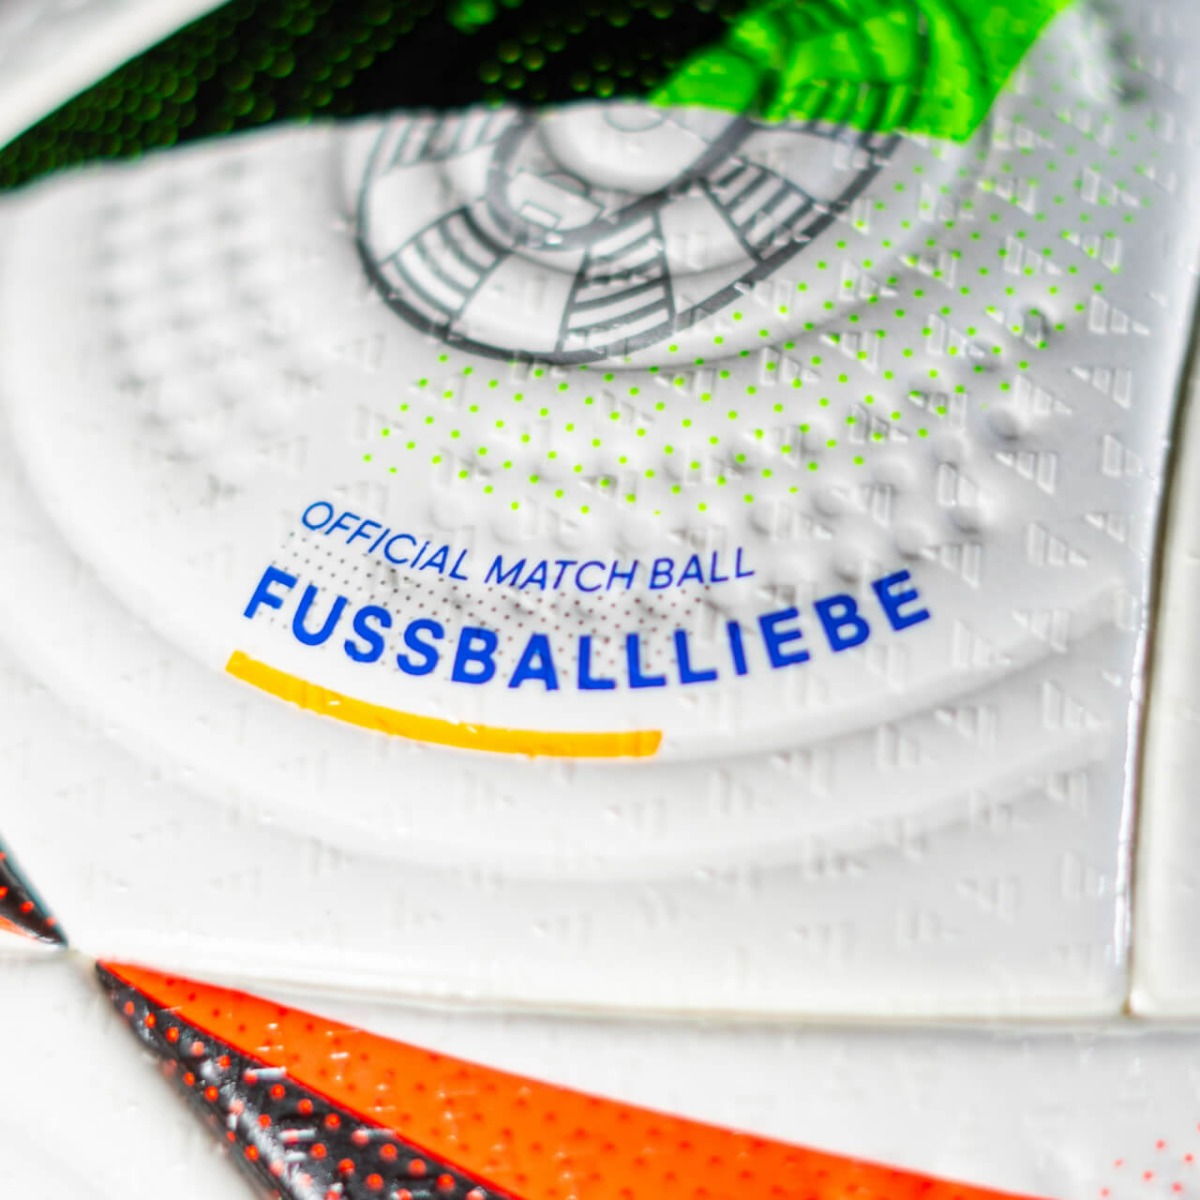 Pourquoi le ballon officiel de l'Euro 2024 signé Adidas n'est pas